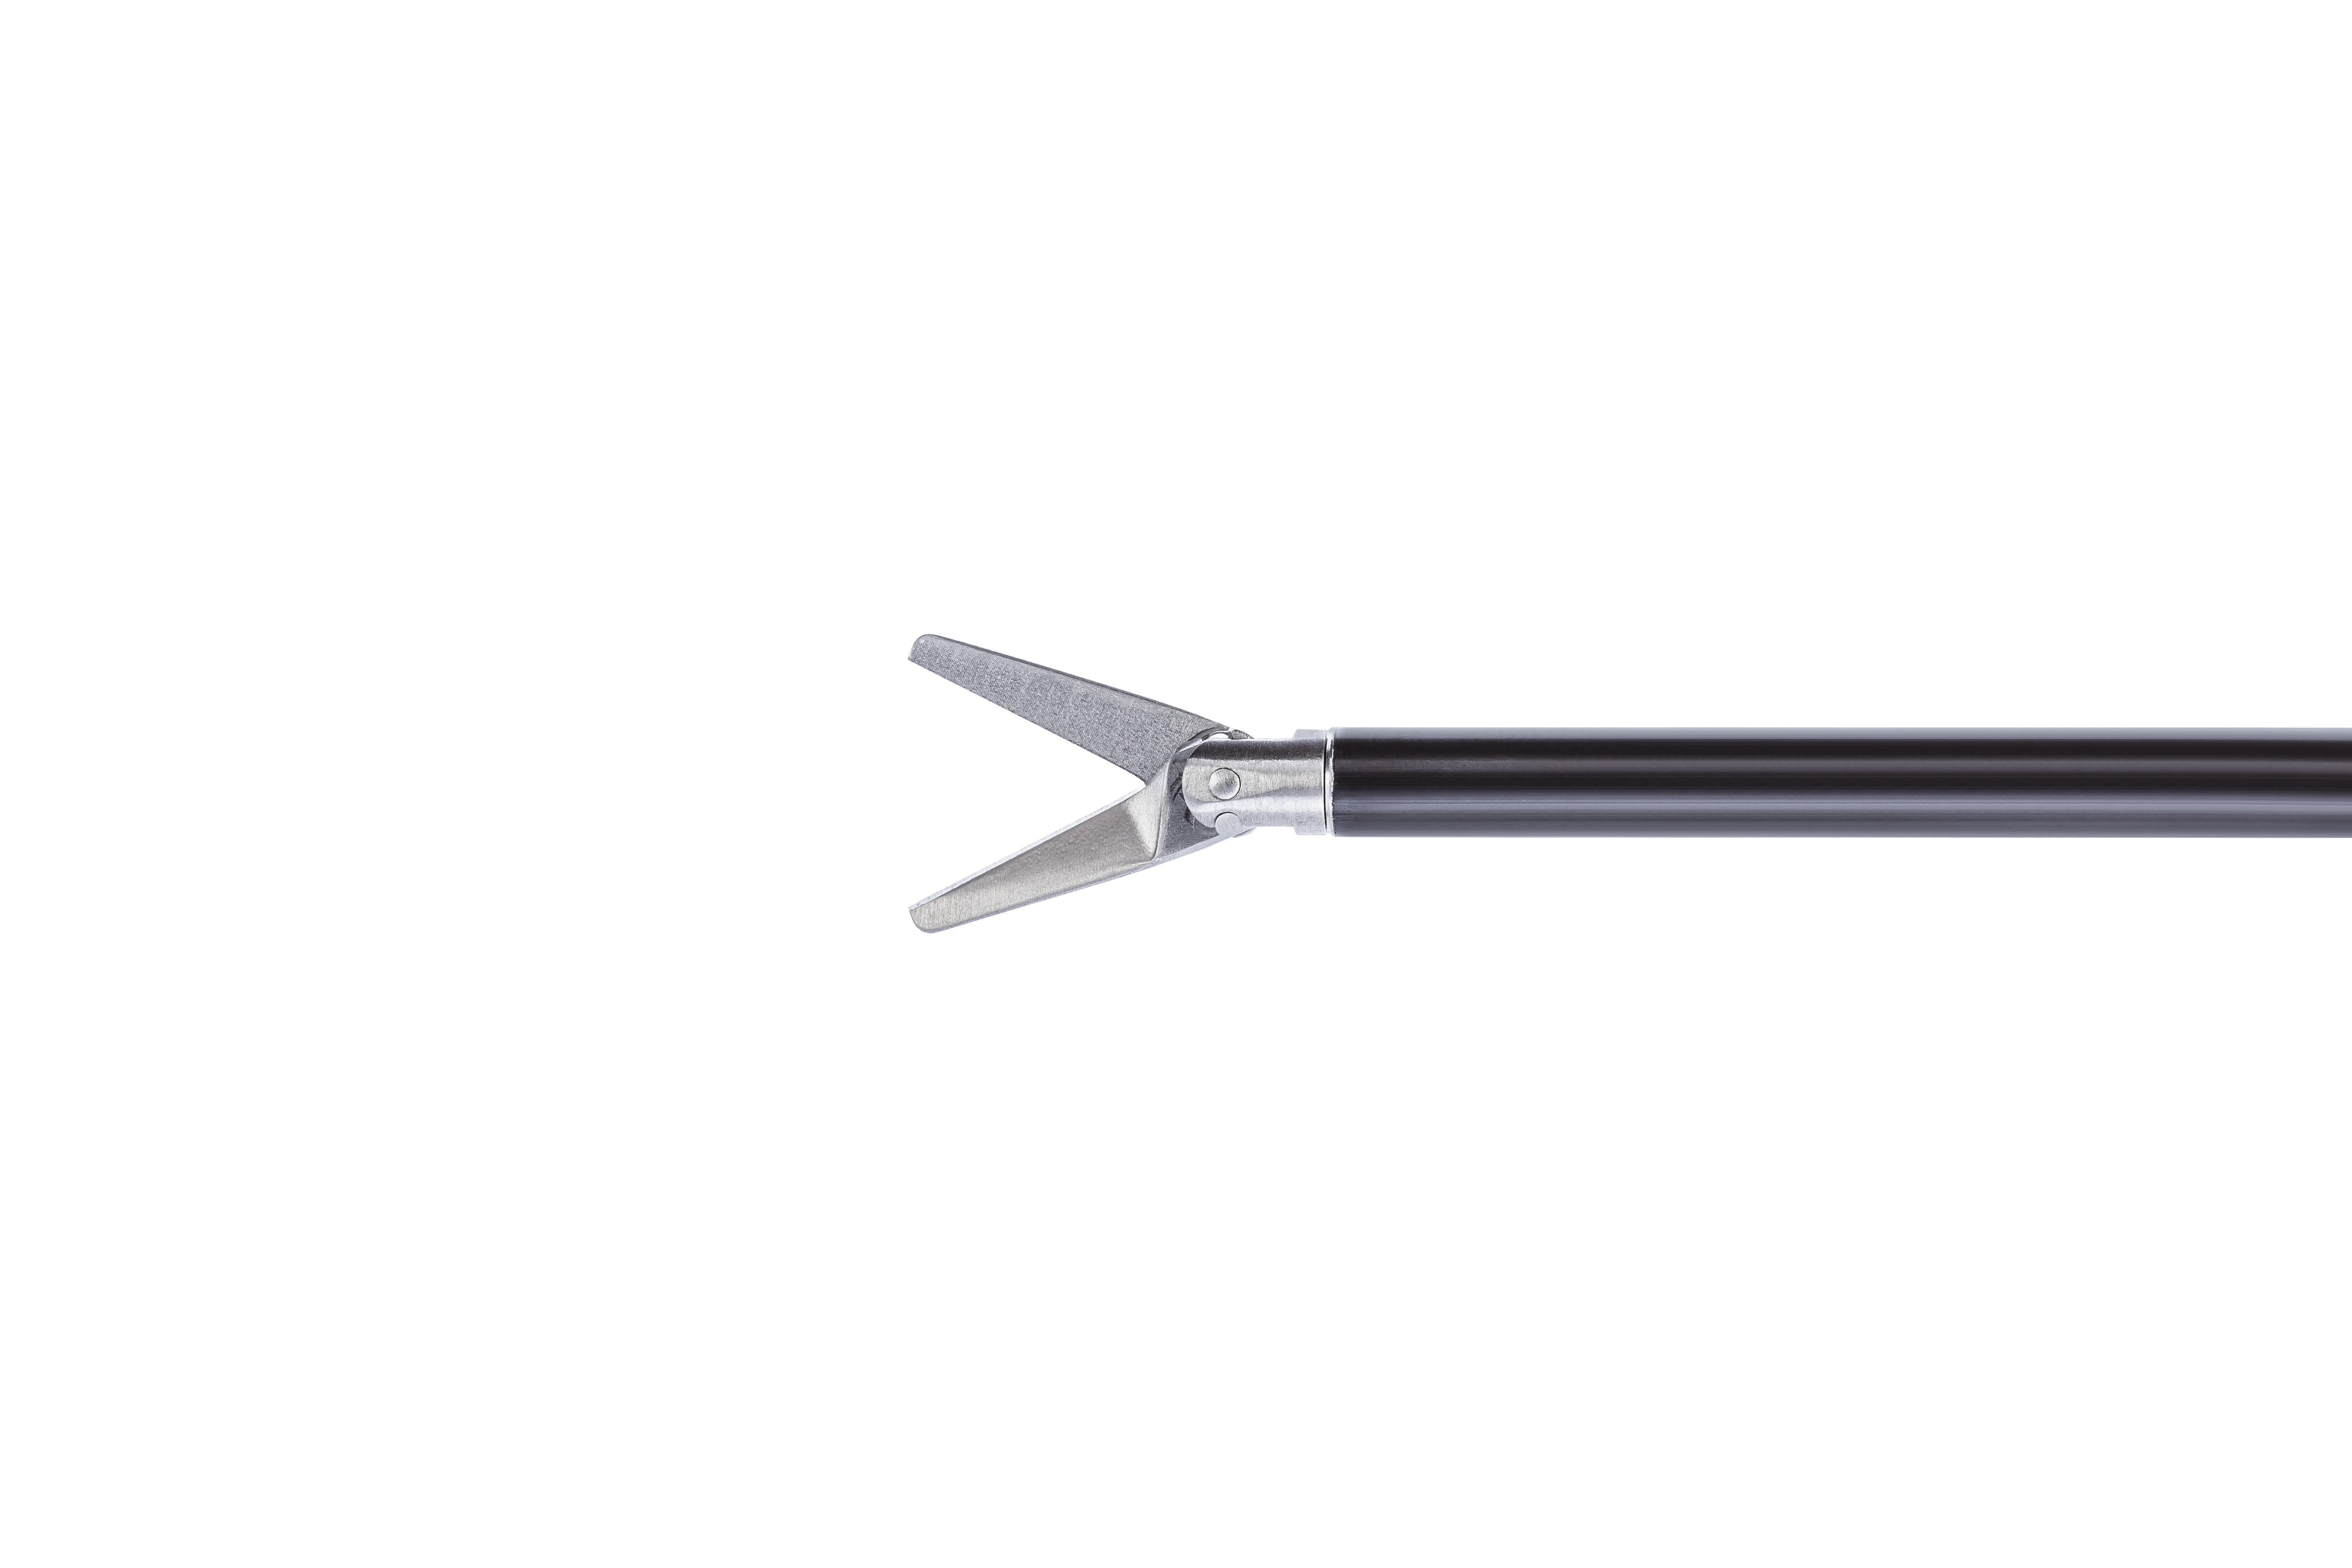  Ножницы монополярные (с двумя подвижными прямыми браншами, бариатрические)